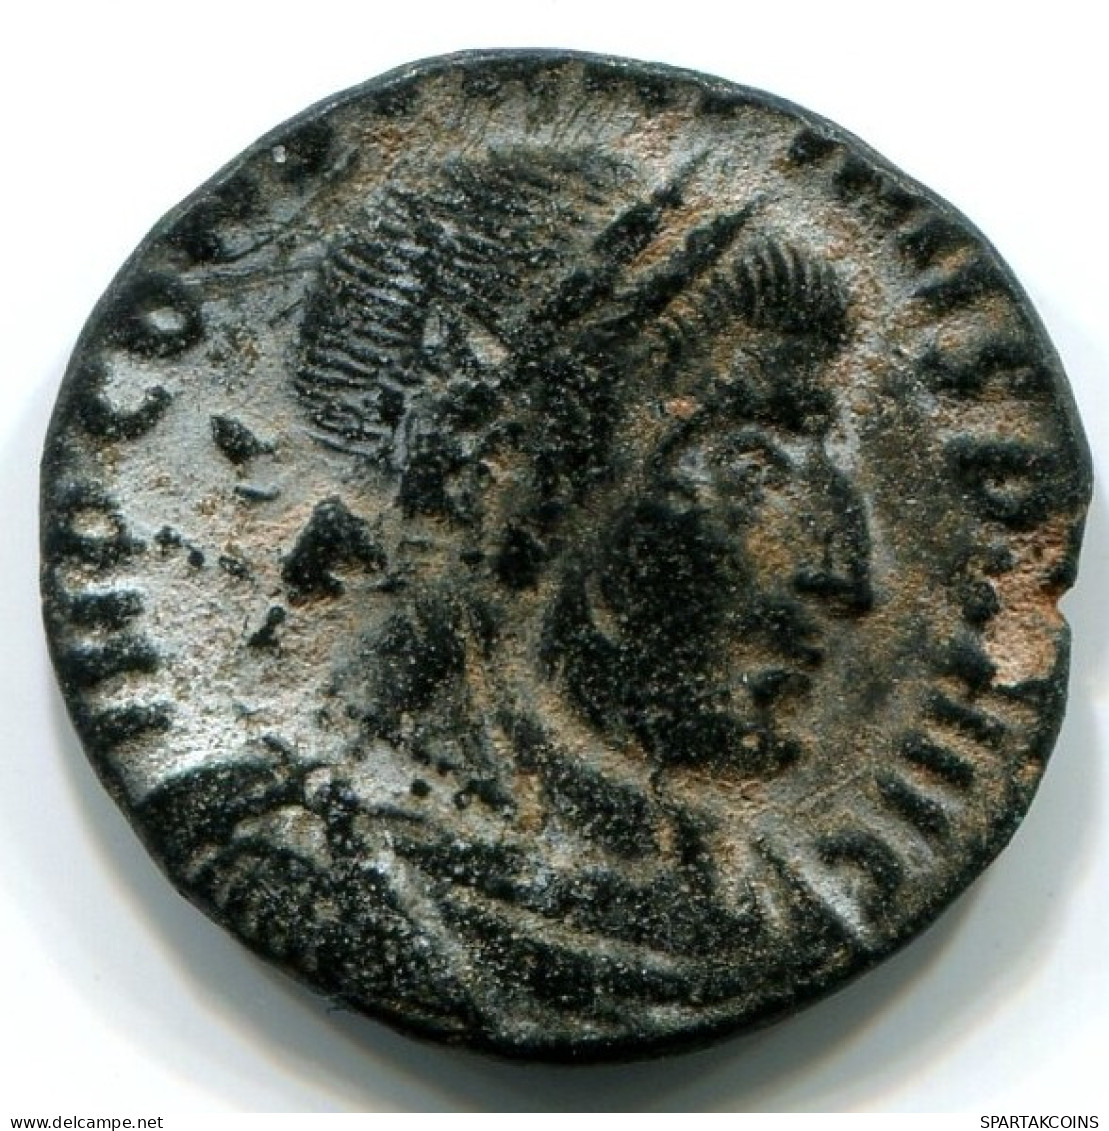 CONSTANTINE I AE SMALL FOLLIS Romano ANTIGUO Moneda #ANC12381.6.E.A - The Christian Empire (307 AD Tot 363 AD)